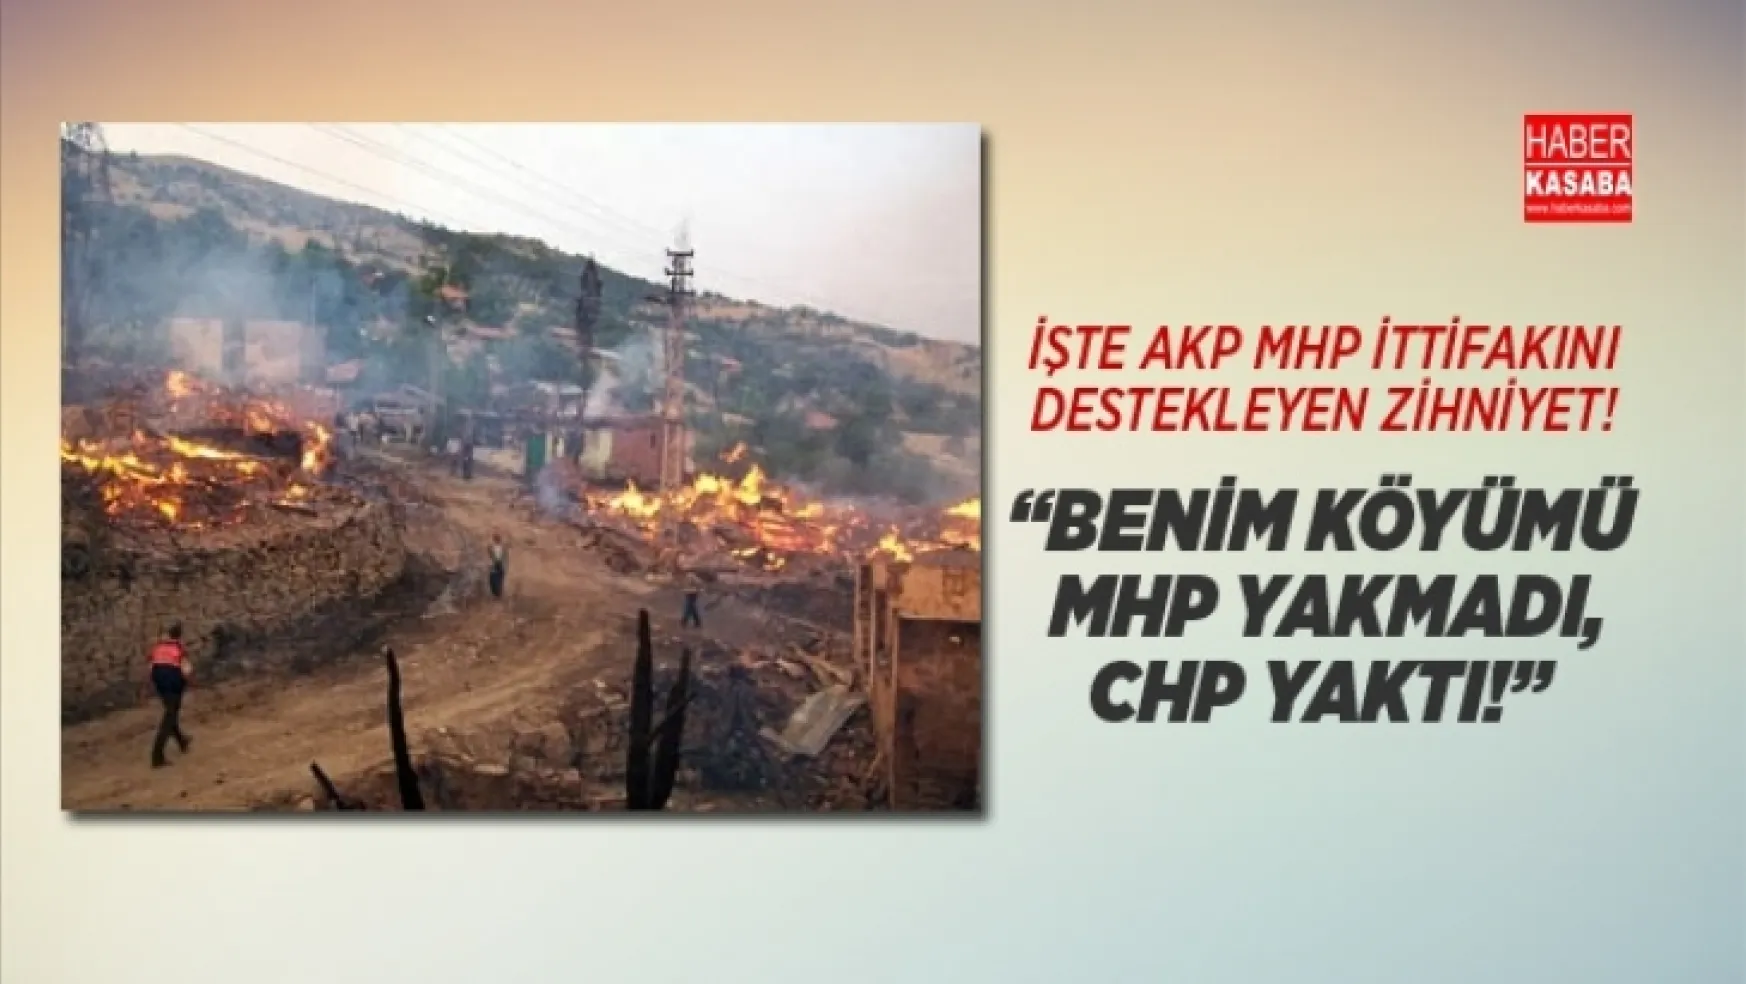 AKP-MHP İttifakını Destekleyen Zihniyet! 'Benim köyümü MHP Yakmadı, CHP Yaktı!'